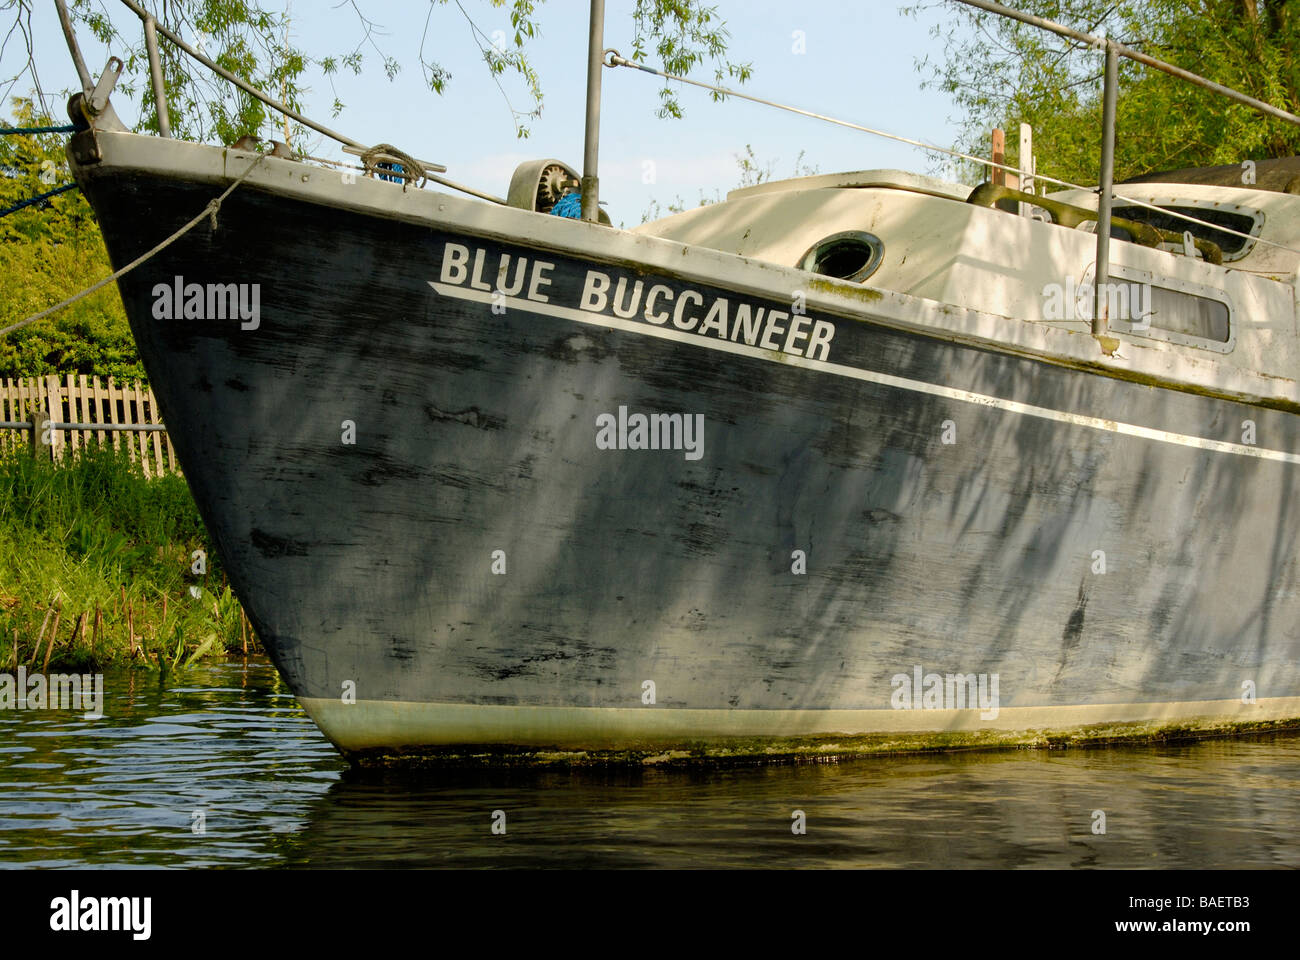 Proue d'un bateau de croisière à moteur Buccaneer bleu patiné, Tamise, Shepperton, Surrey, Angleterre Banque D'Images